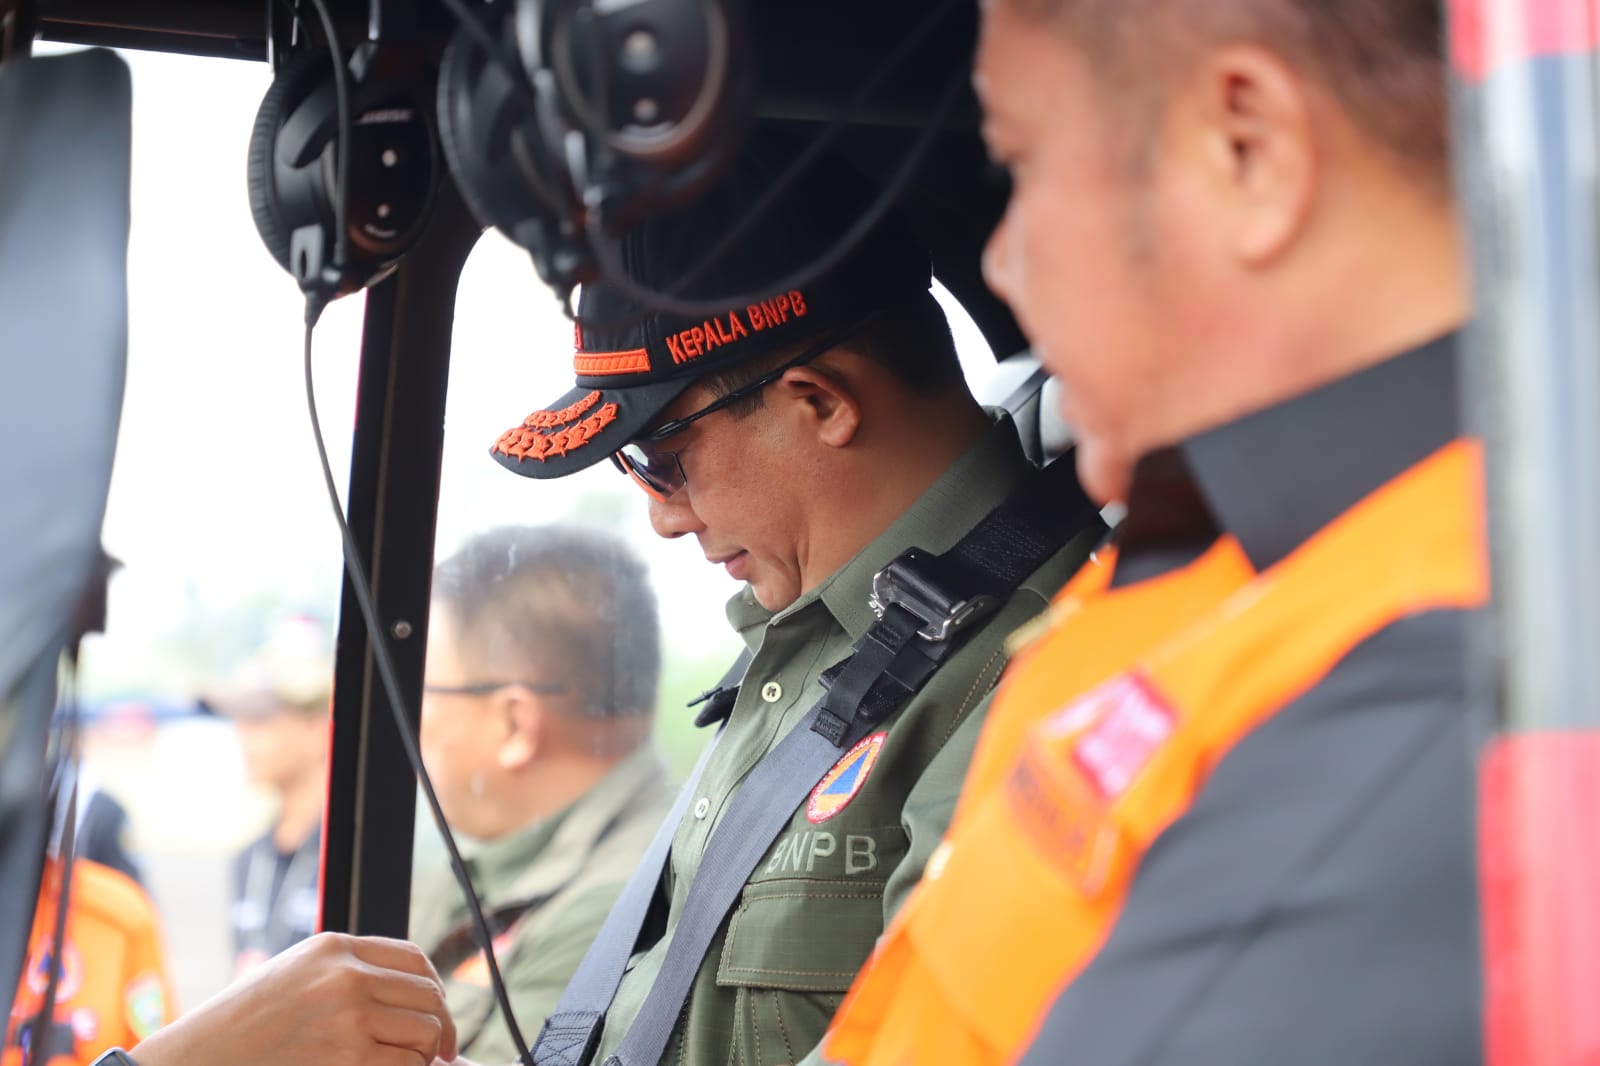 Kepala BNPB Letjen TNI Suharyanto (kemeja dan rompi hijau) beserta Herman Deru (rompi orange) selaku Gubernur Sumatera Selatan saat bersiap lakukan peninjauan udara menggunakan helikopter di wilayah Sumatera Selatan pada Selasa (12/9).